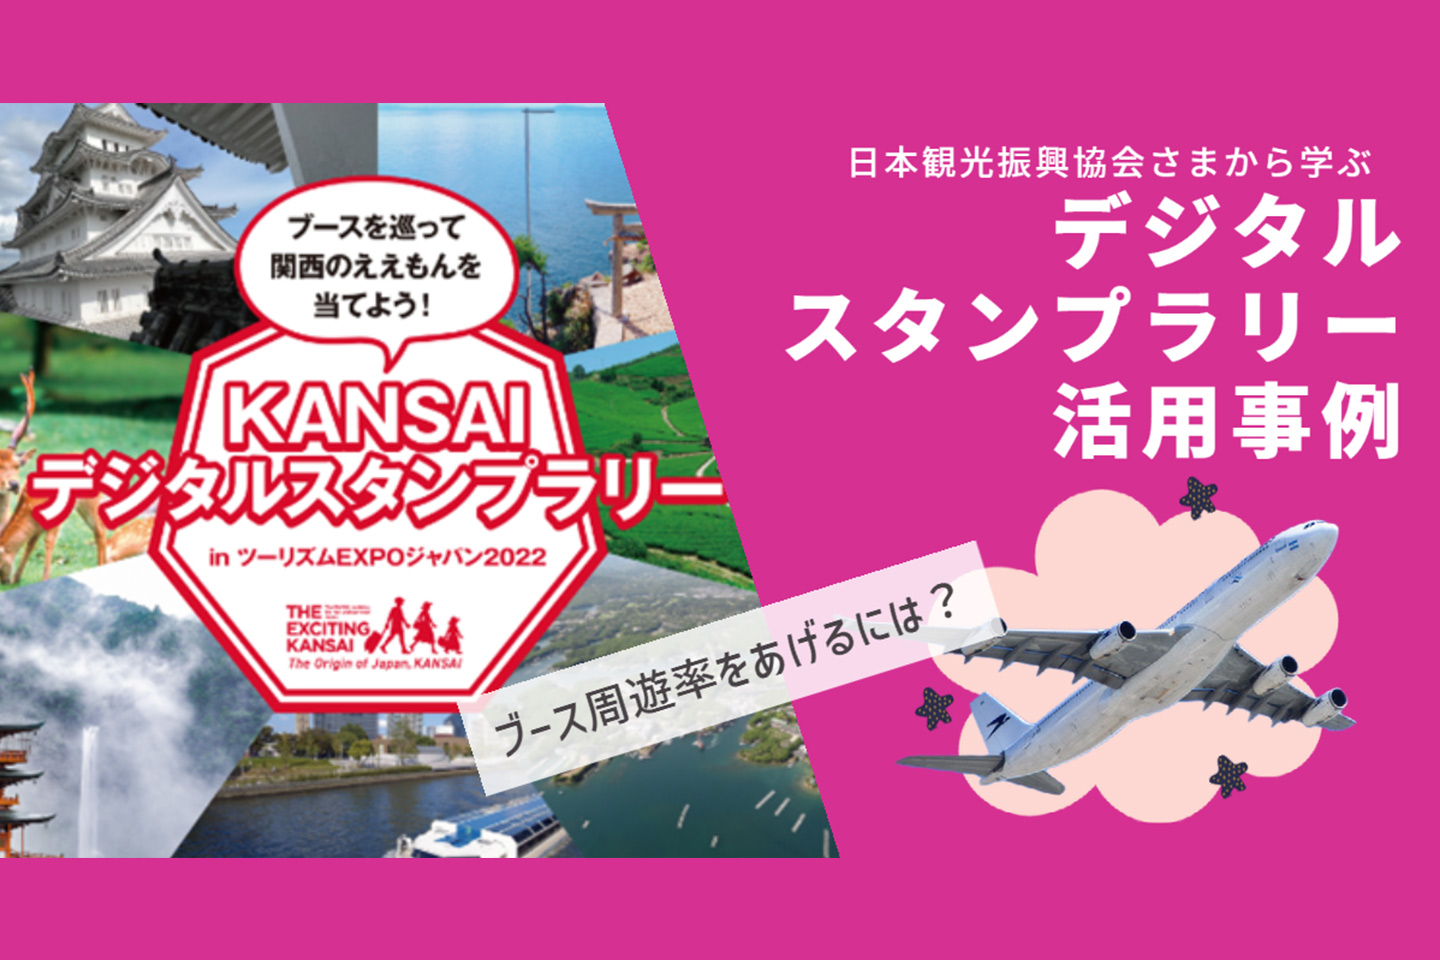 日本観光振興協会様「KANSAIデジタルスタンプラリー」